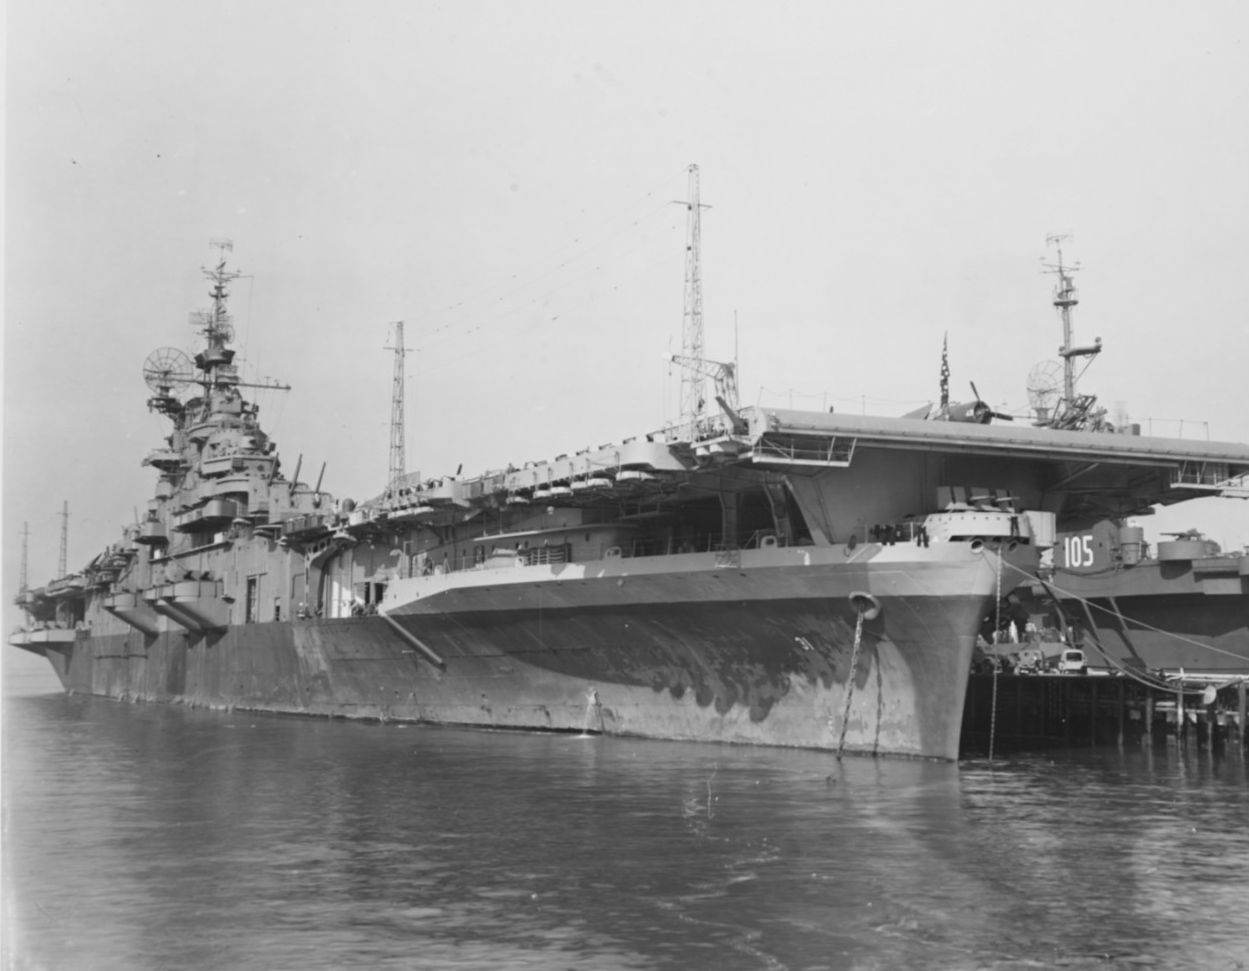 USS Bon Homme Richard (CV-31)